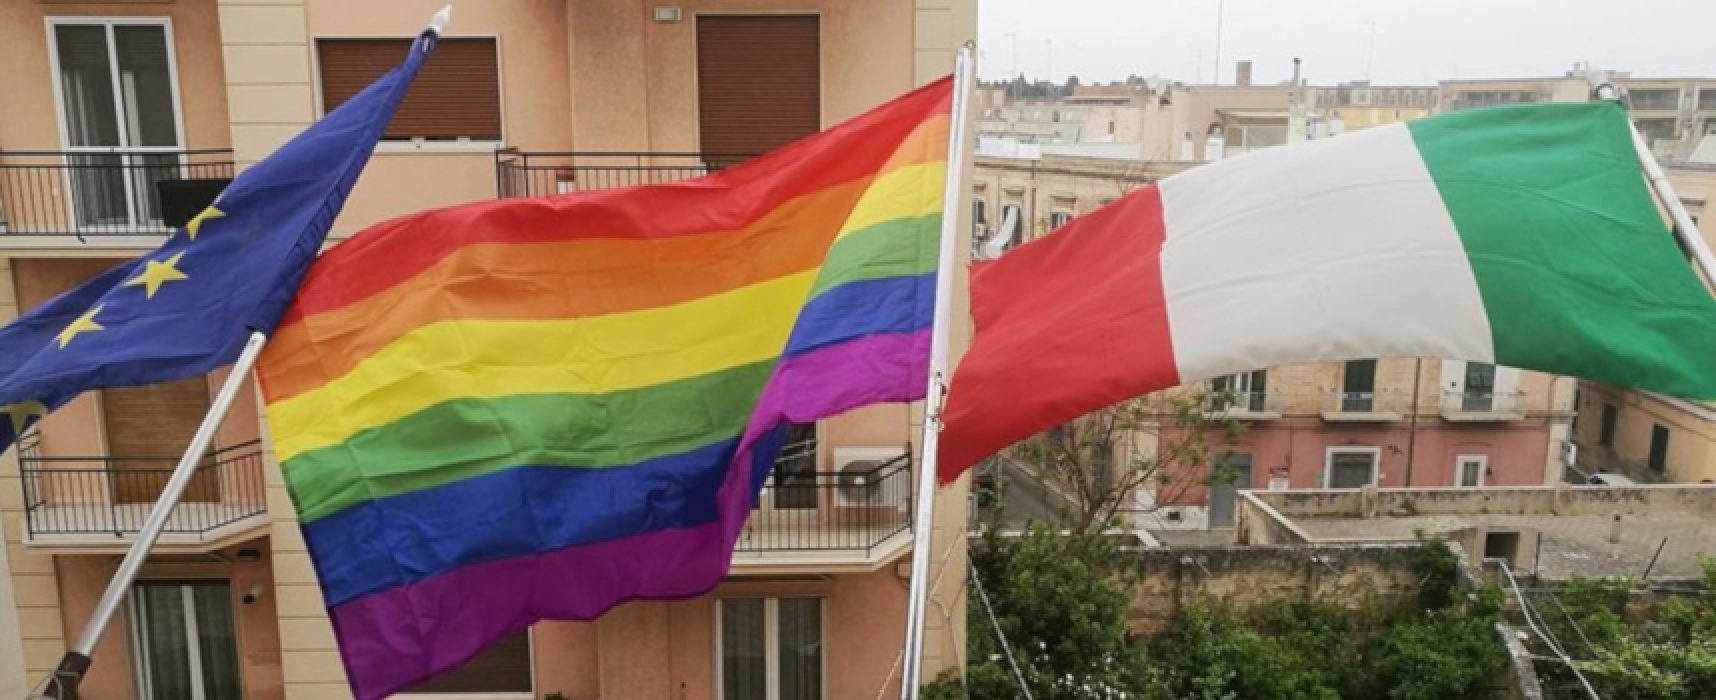 Giornata contro le discriminazioni, bandiera arcobaleno issata a Palazzo di Città / FOTO